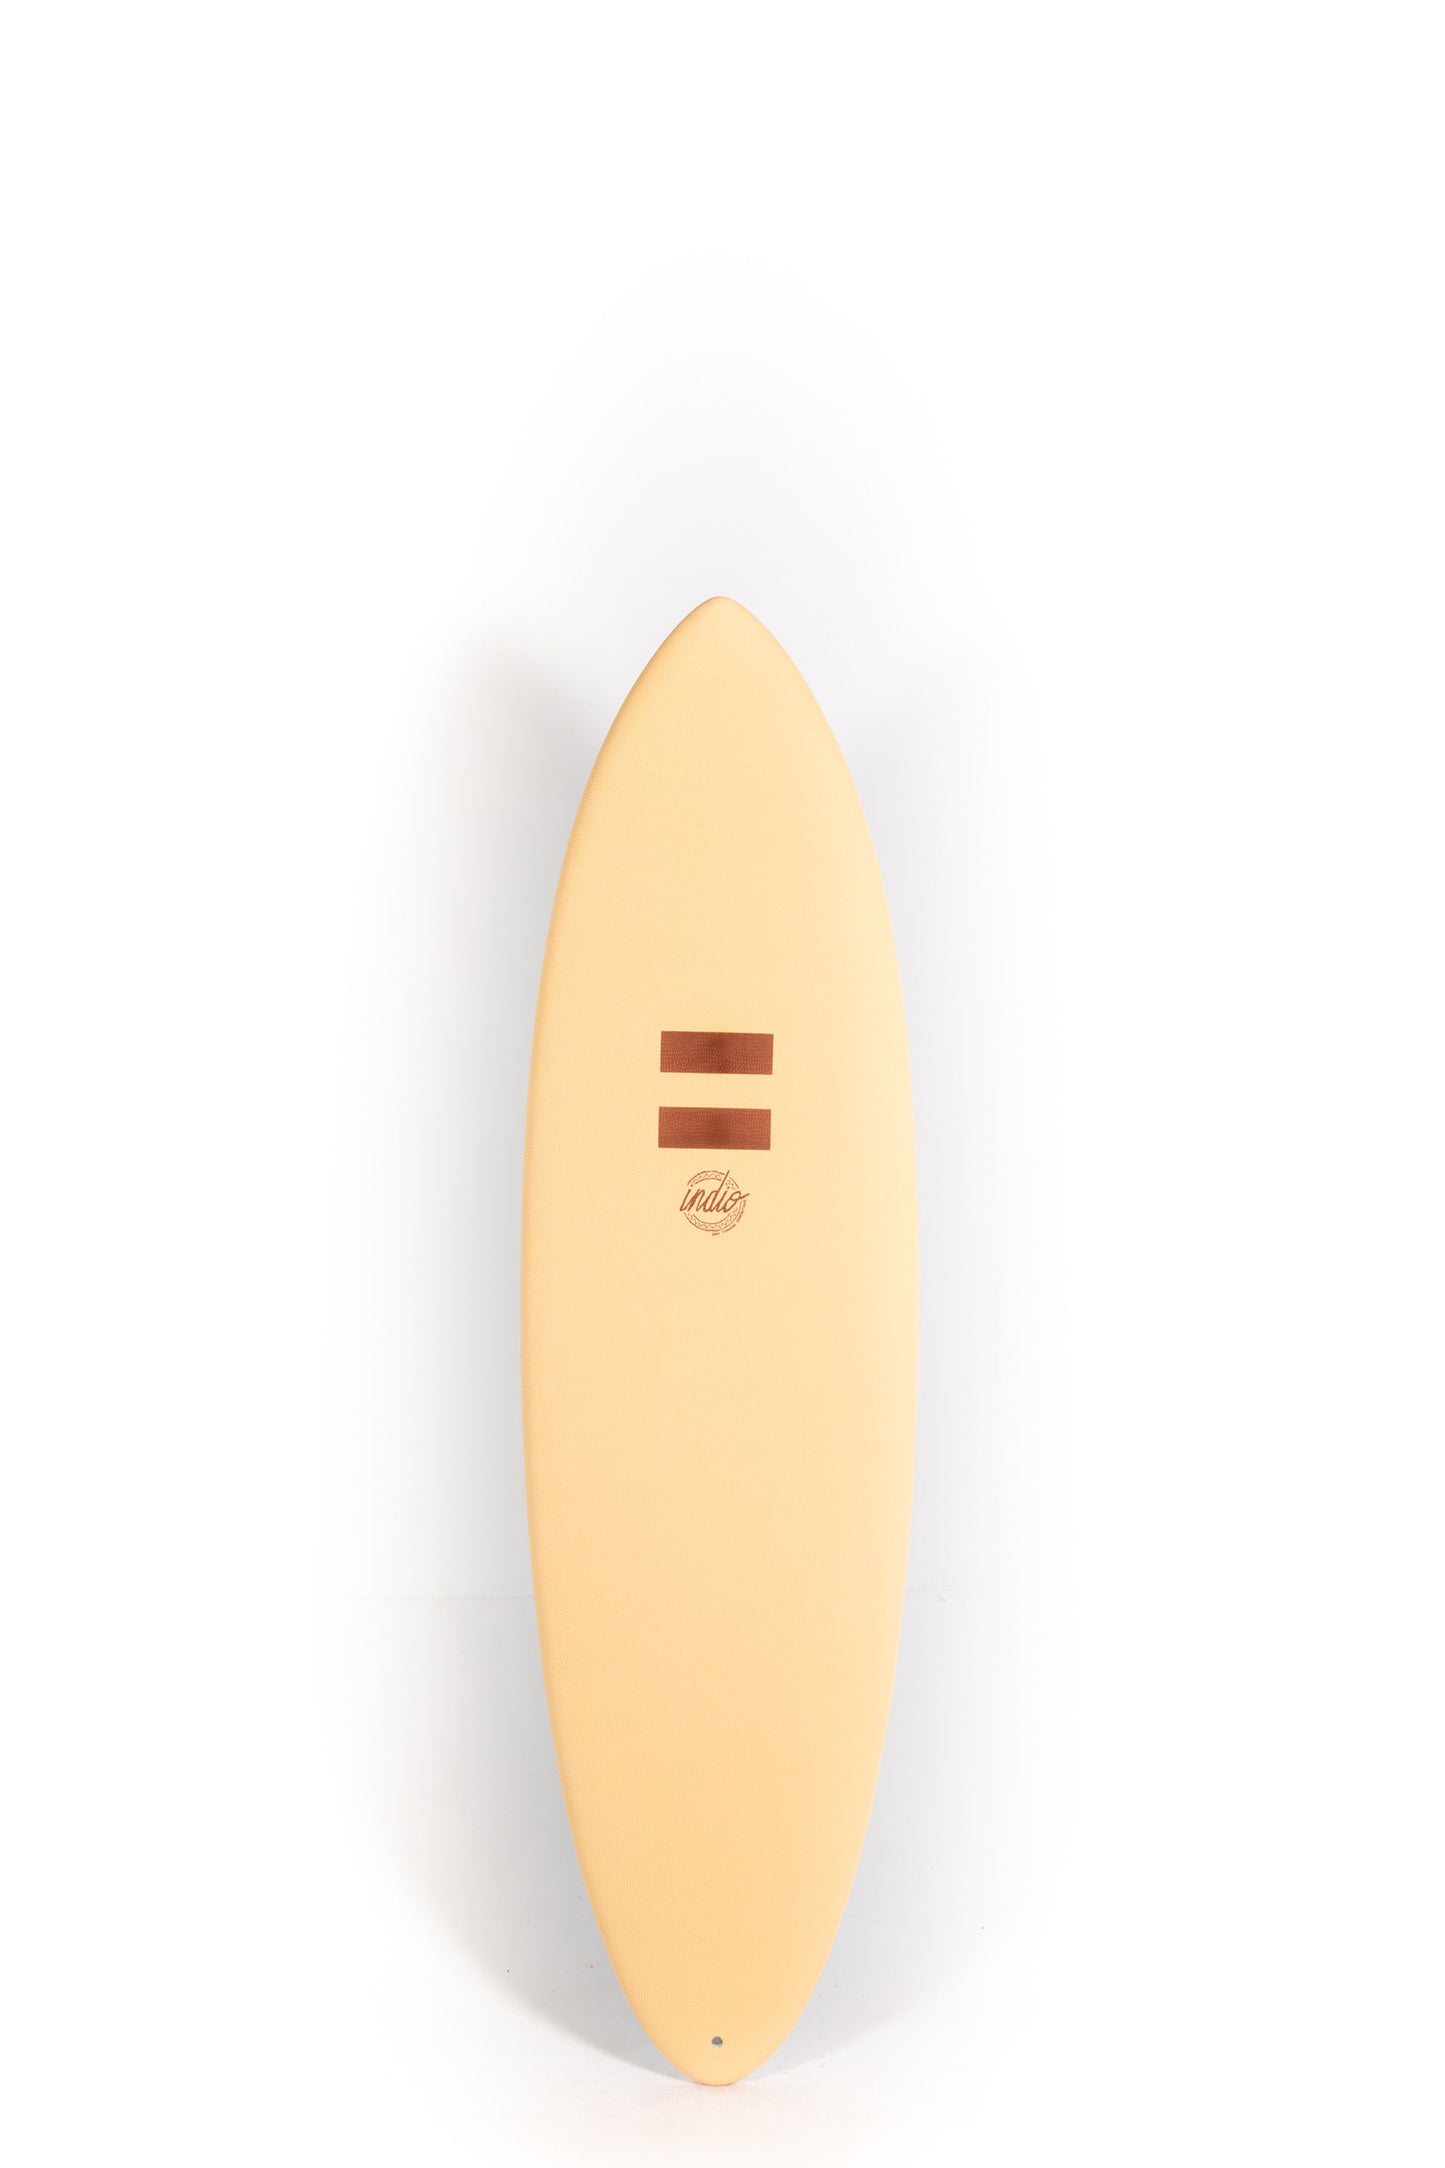 ONE PIECES – PUKAS SURF SHOP